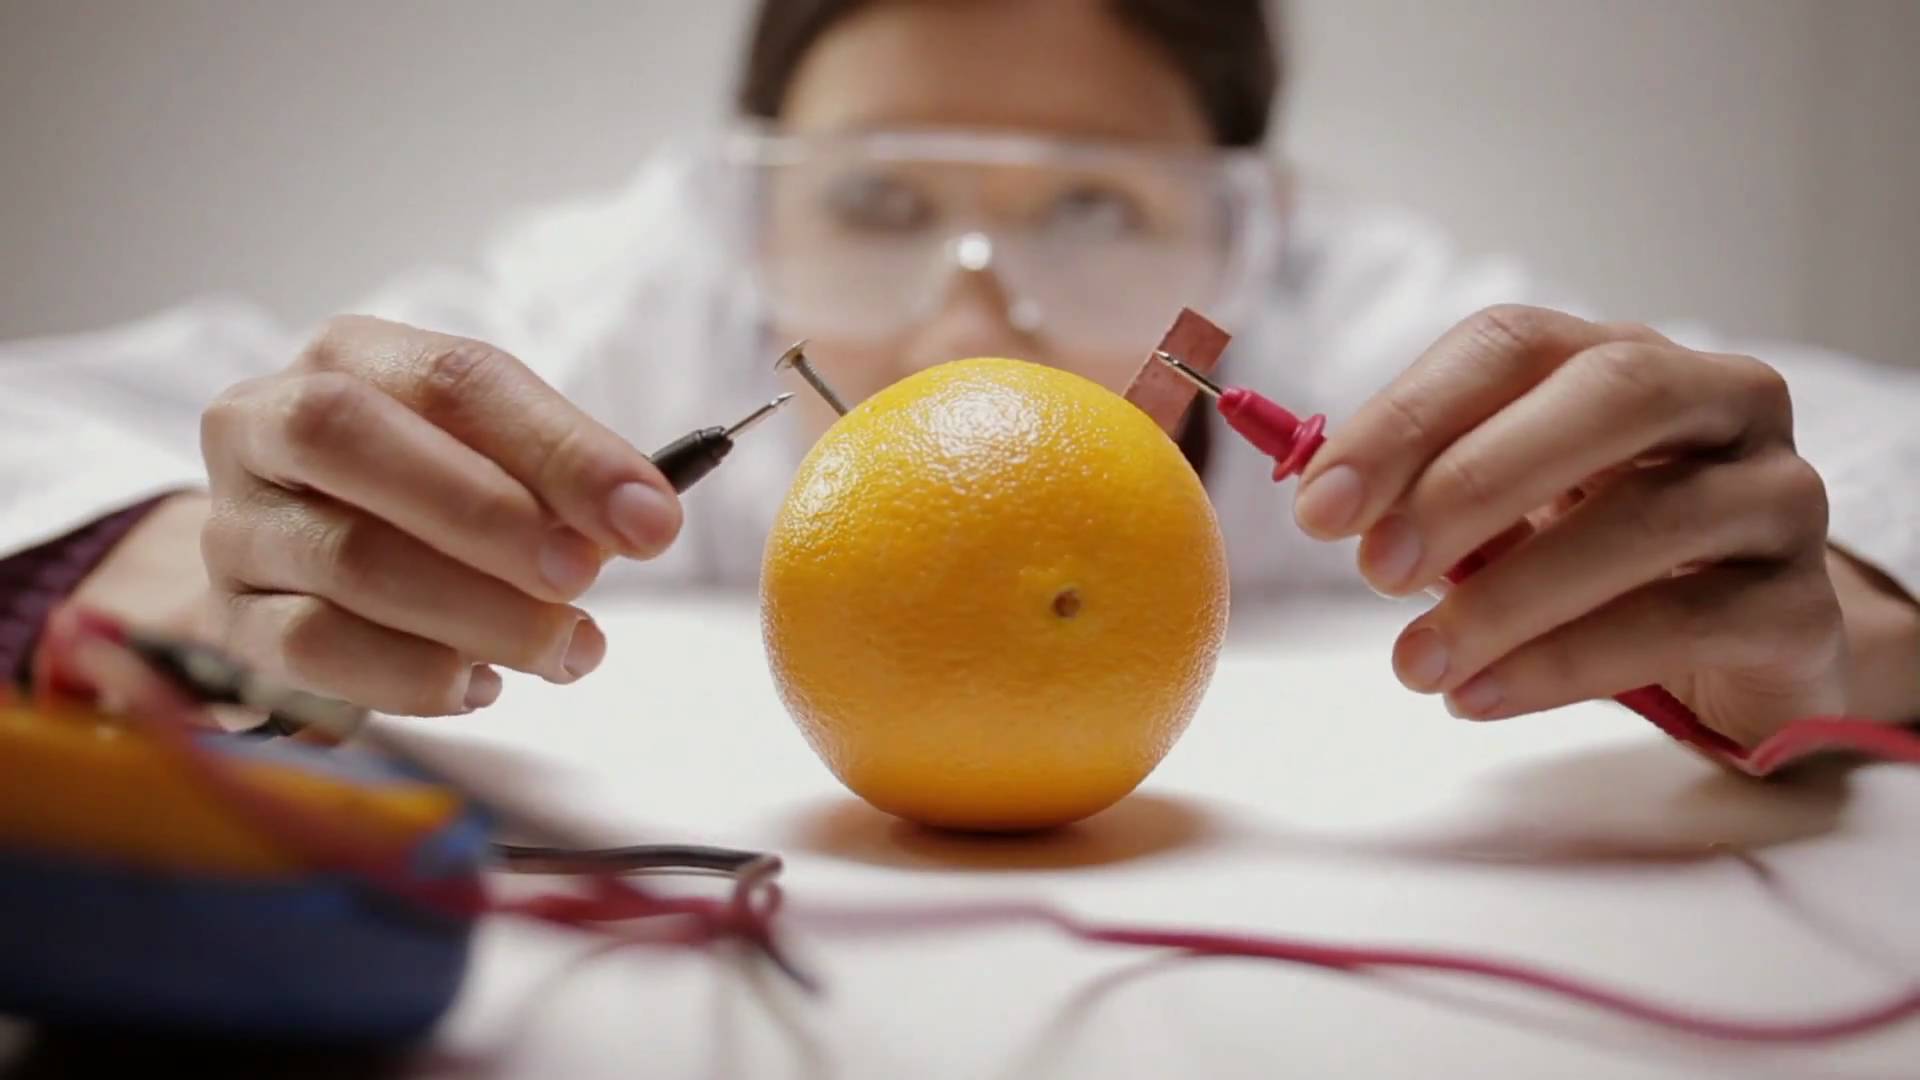 Billede tilhørende: Viral marketing: Appelsiner leverer naturlig energi